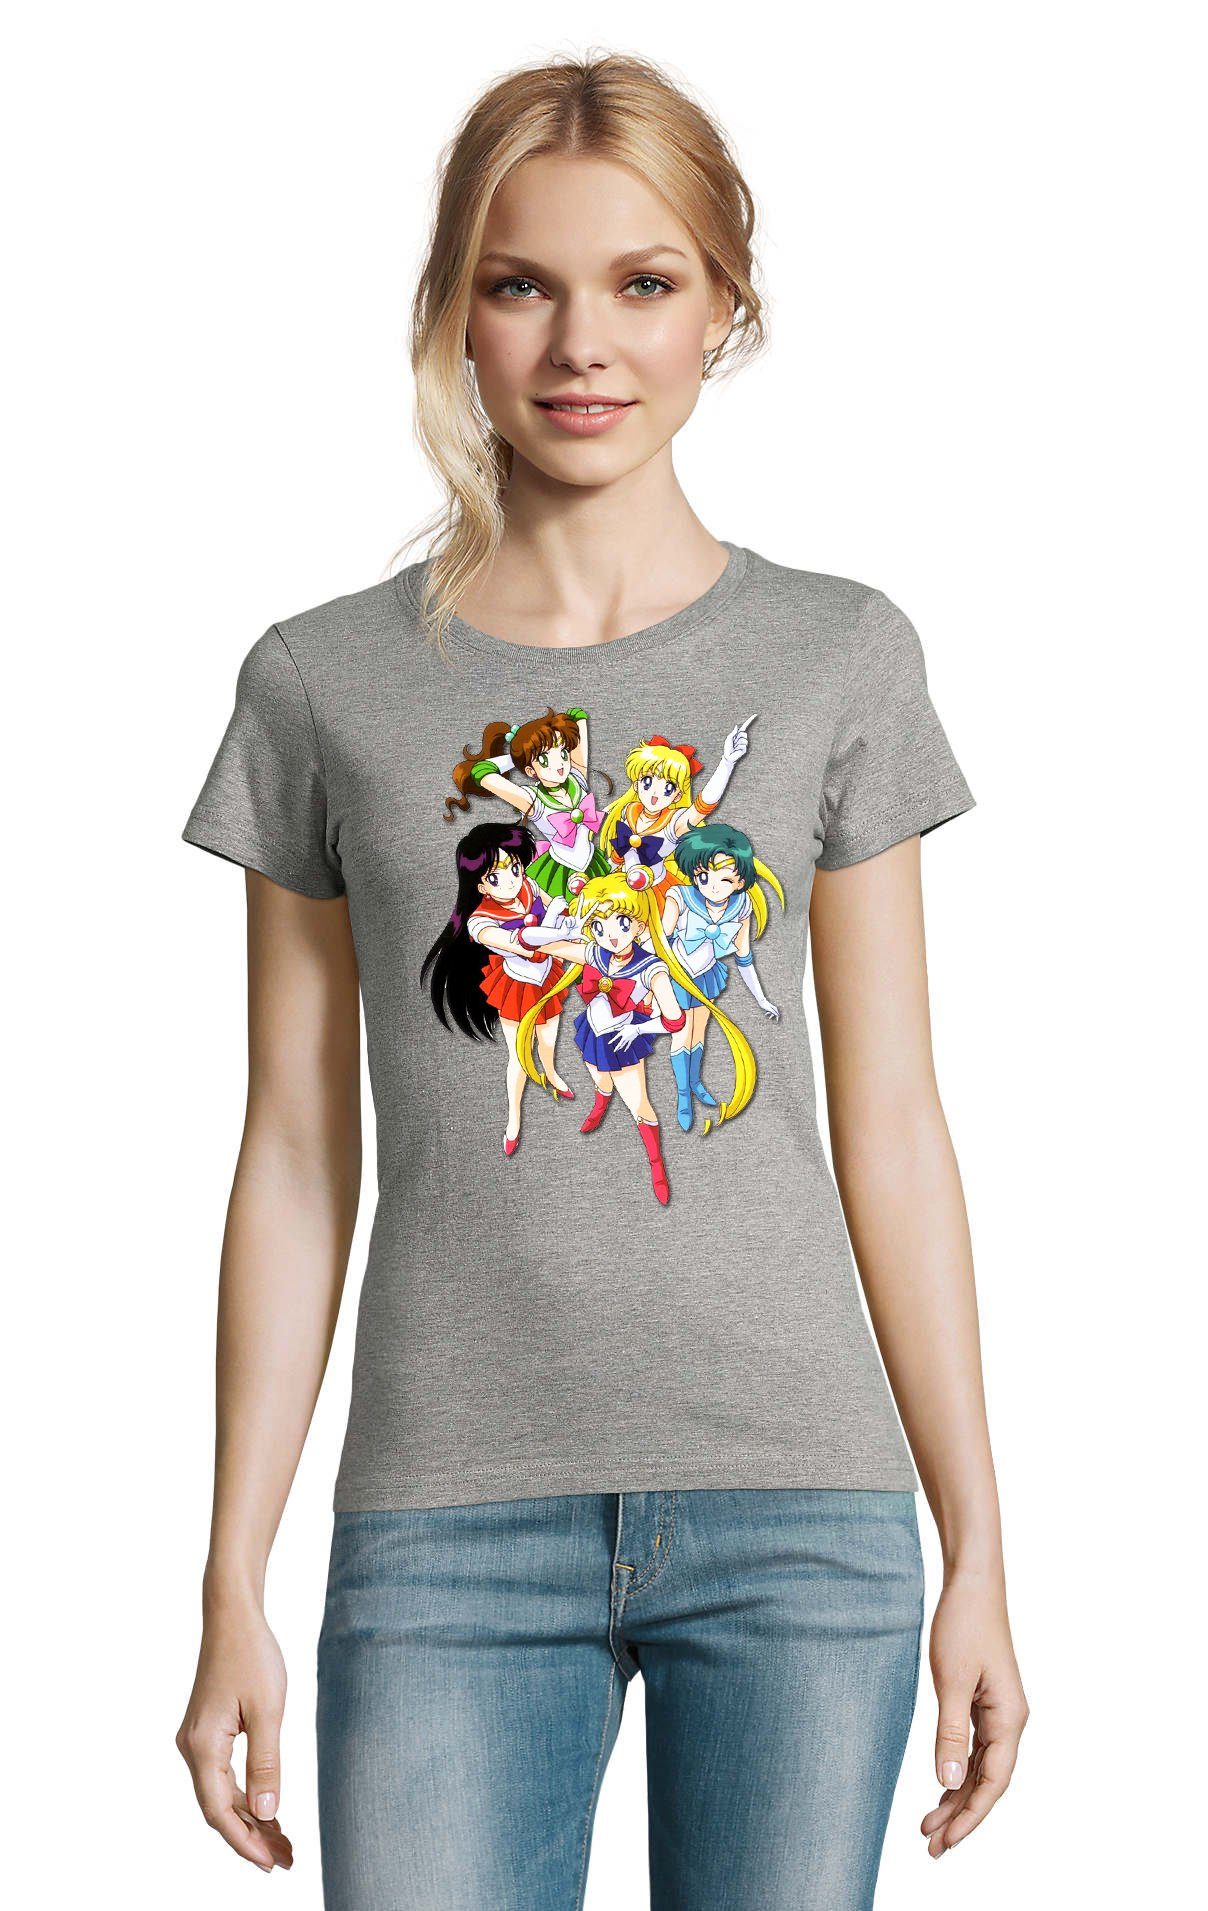 Blondie & Grau Brownie Manga Friends Damen Sailor and Anime Comic Fun Moon T-Shirt